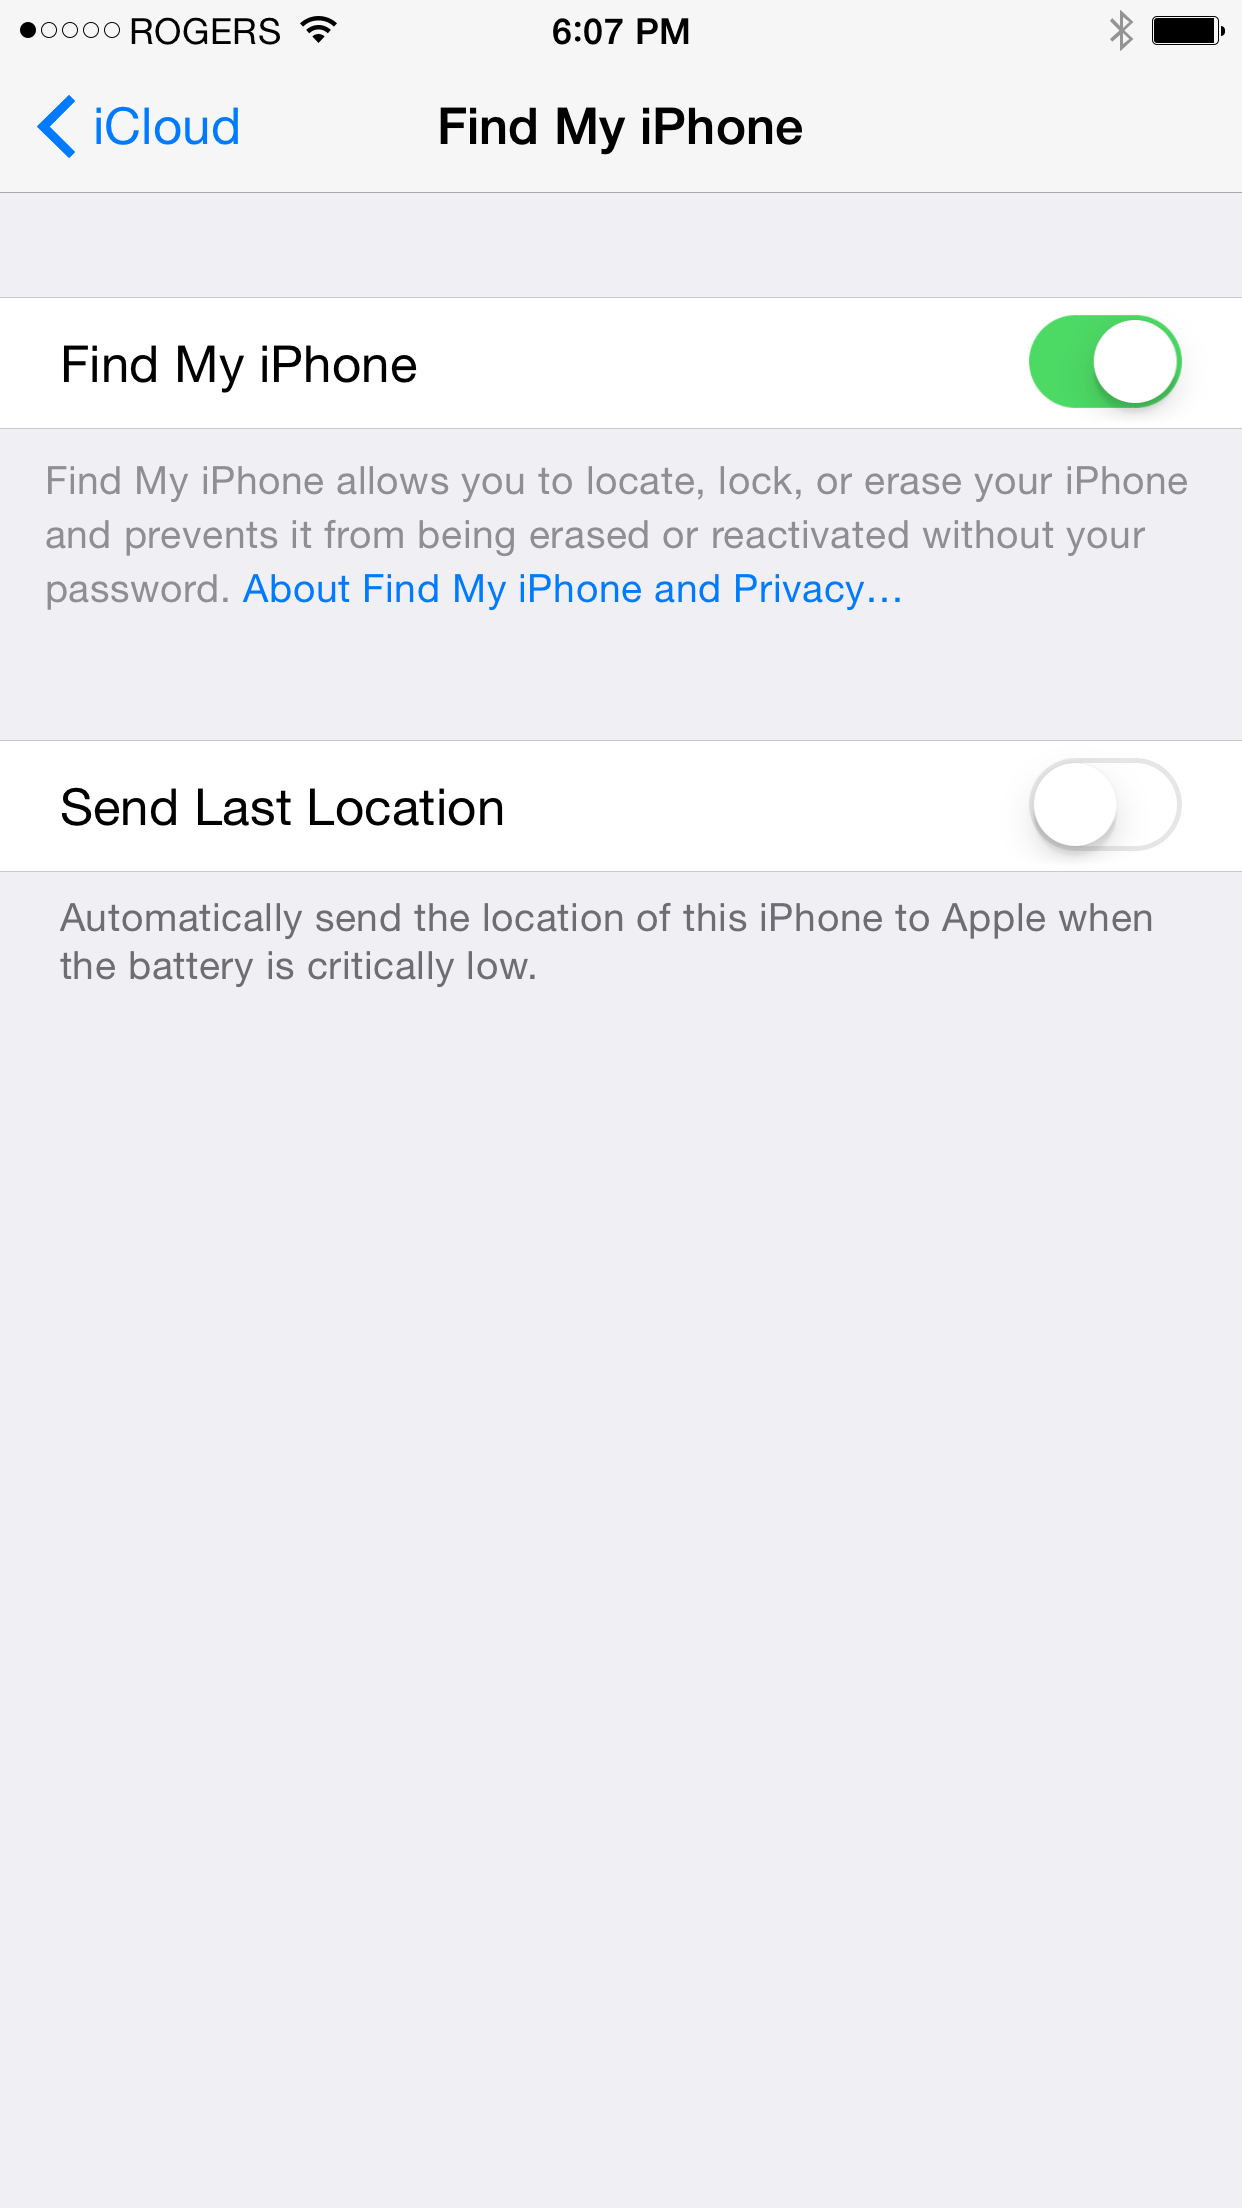 How to Jailbreak Your iPhone 6 Plus, 6, 5s, 5c, 5, 4s Using PP (Mac) [iOS 8.4]